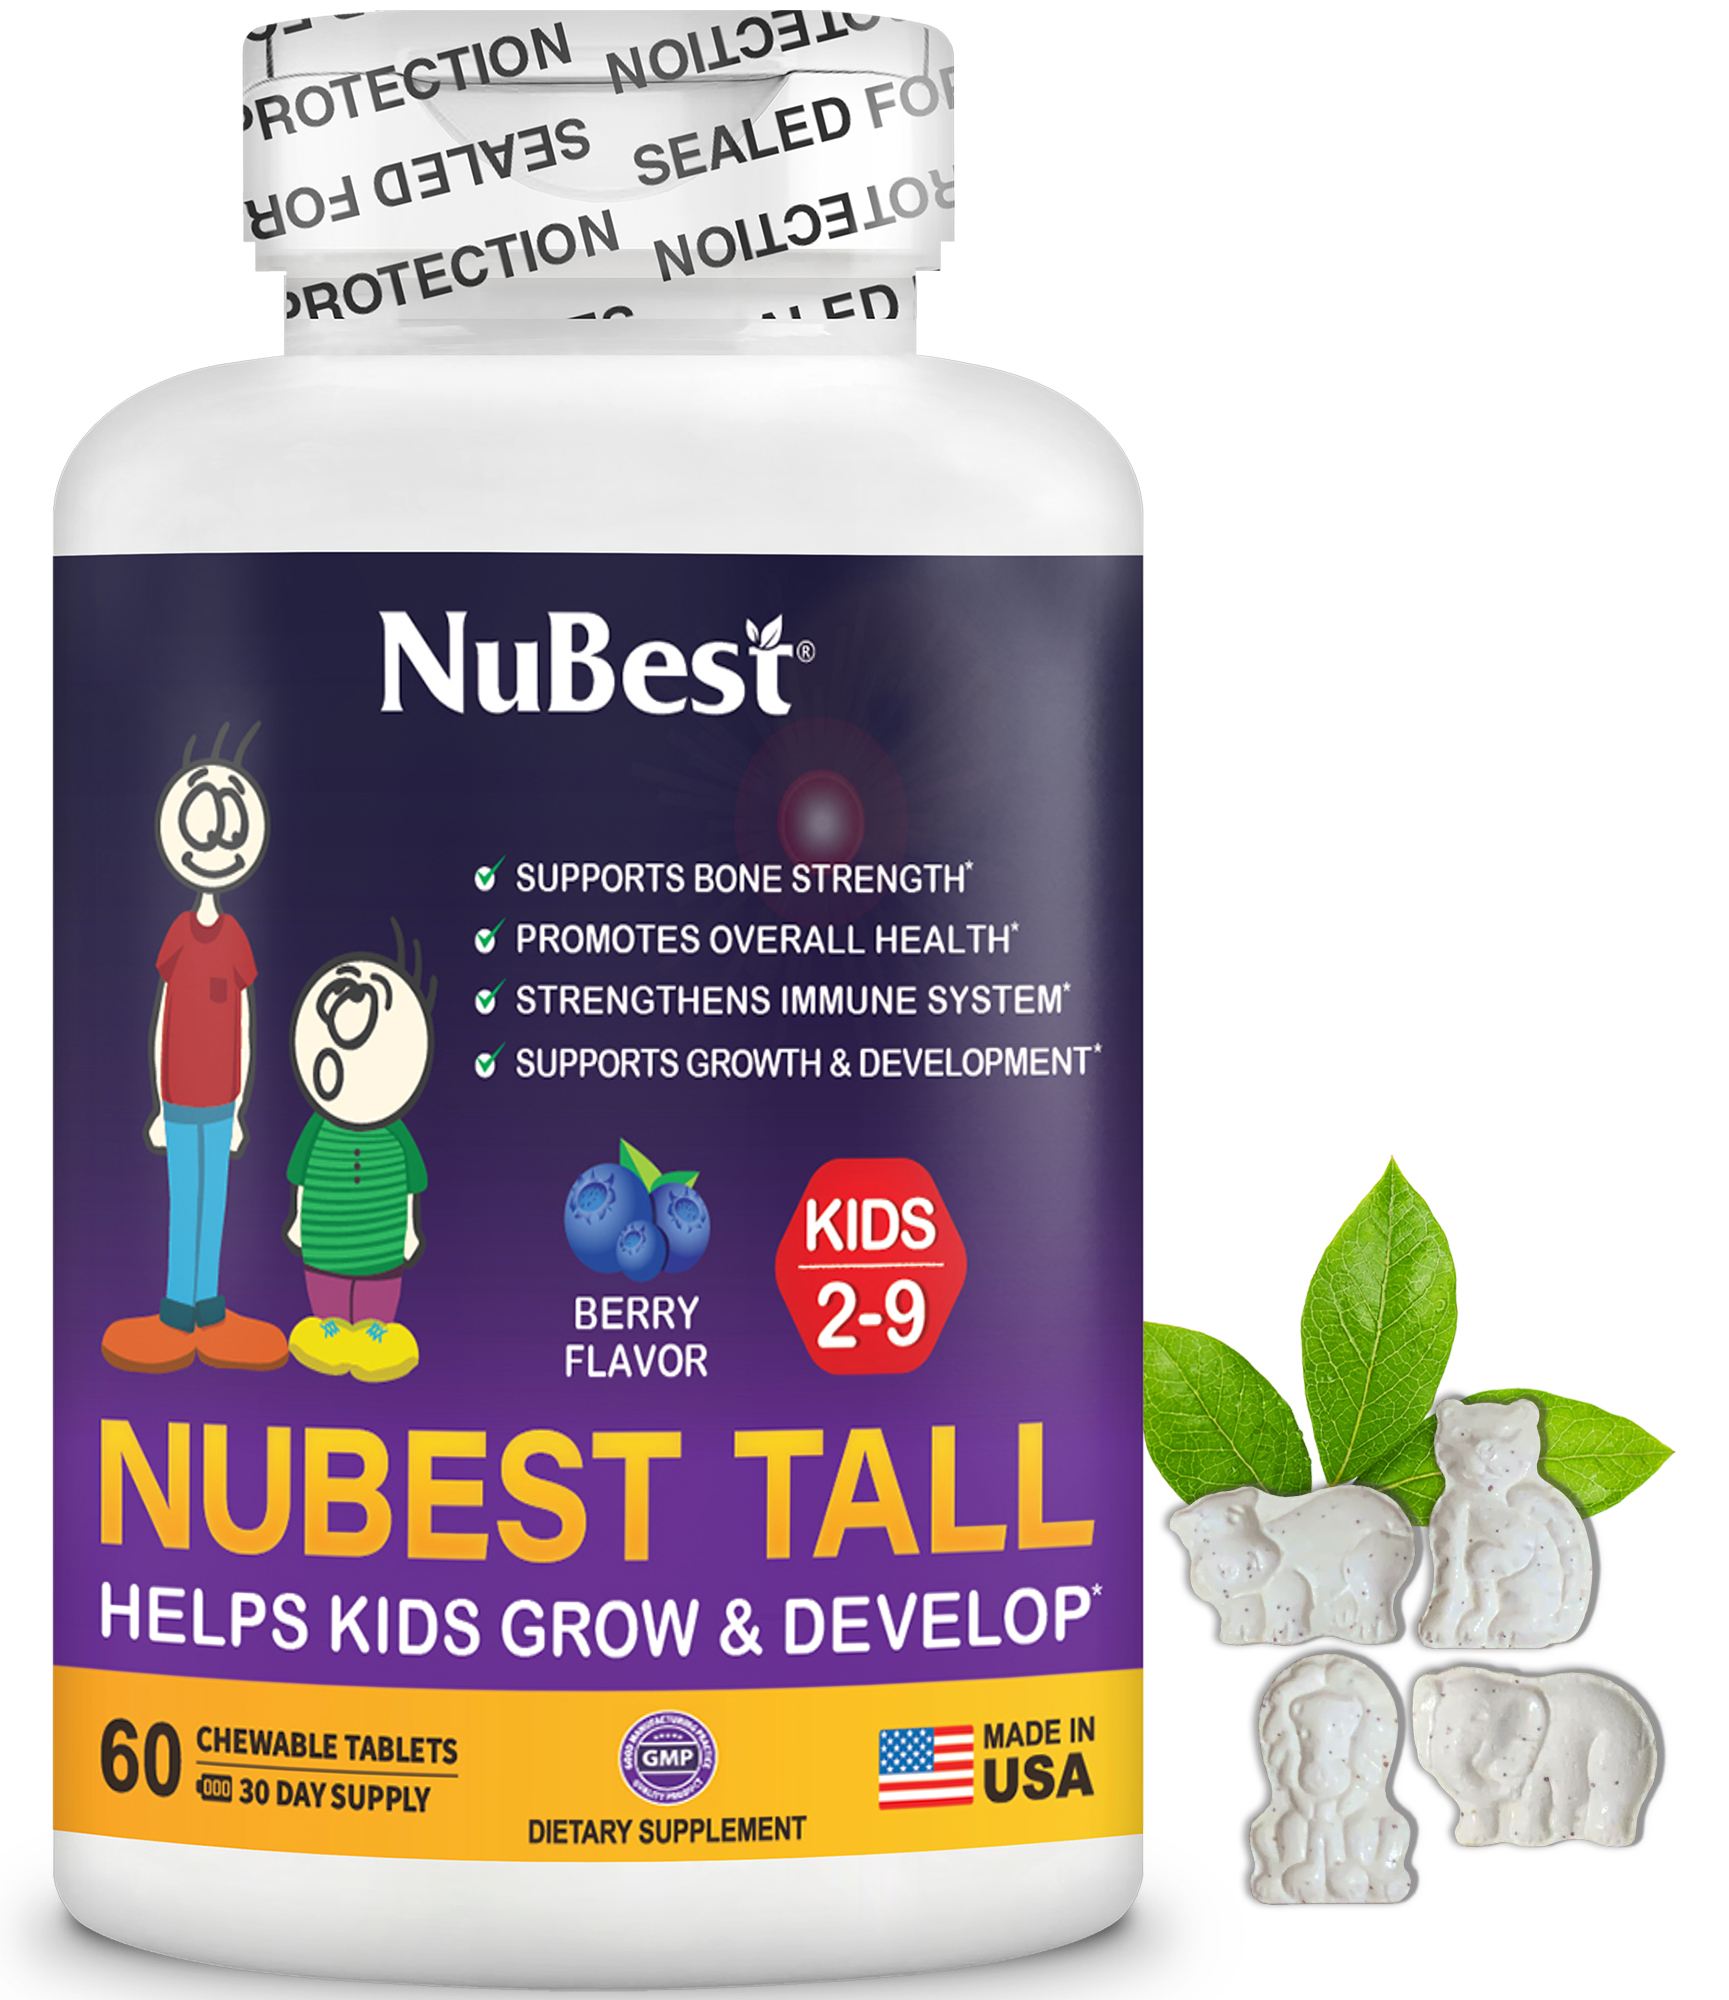 [Combo Kết Hợp] TPBVSK hỗ trợ Tăng Chiều Cao 2 NuBest Tall 10+ (Trên 10 Tuổi) và 1 NuBest Tall Kids (từ 2-9 Tuổi) tặng 1 NuBest Tall Kids